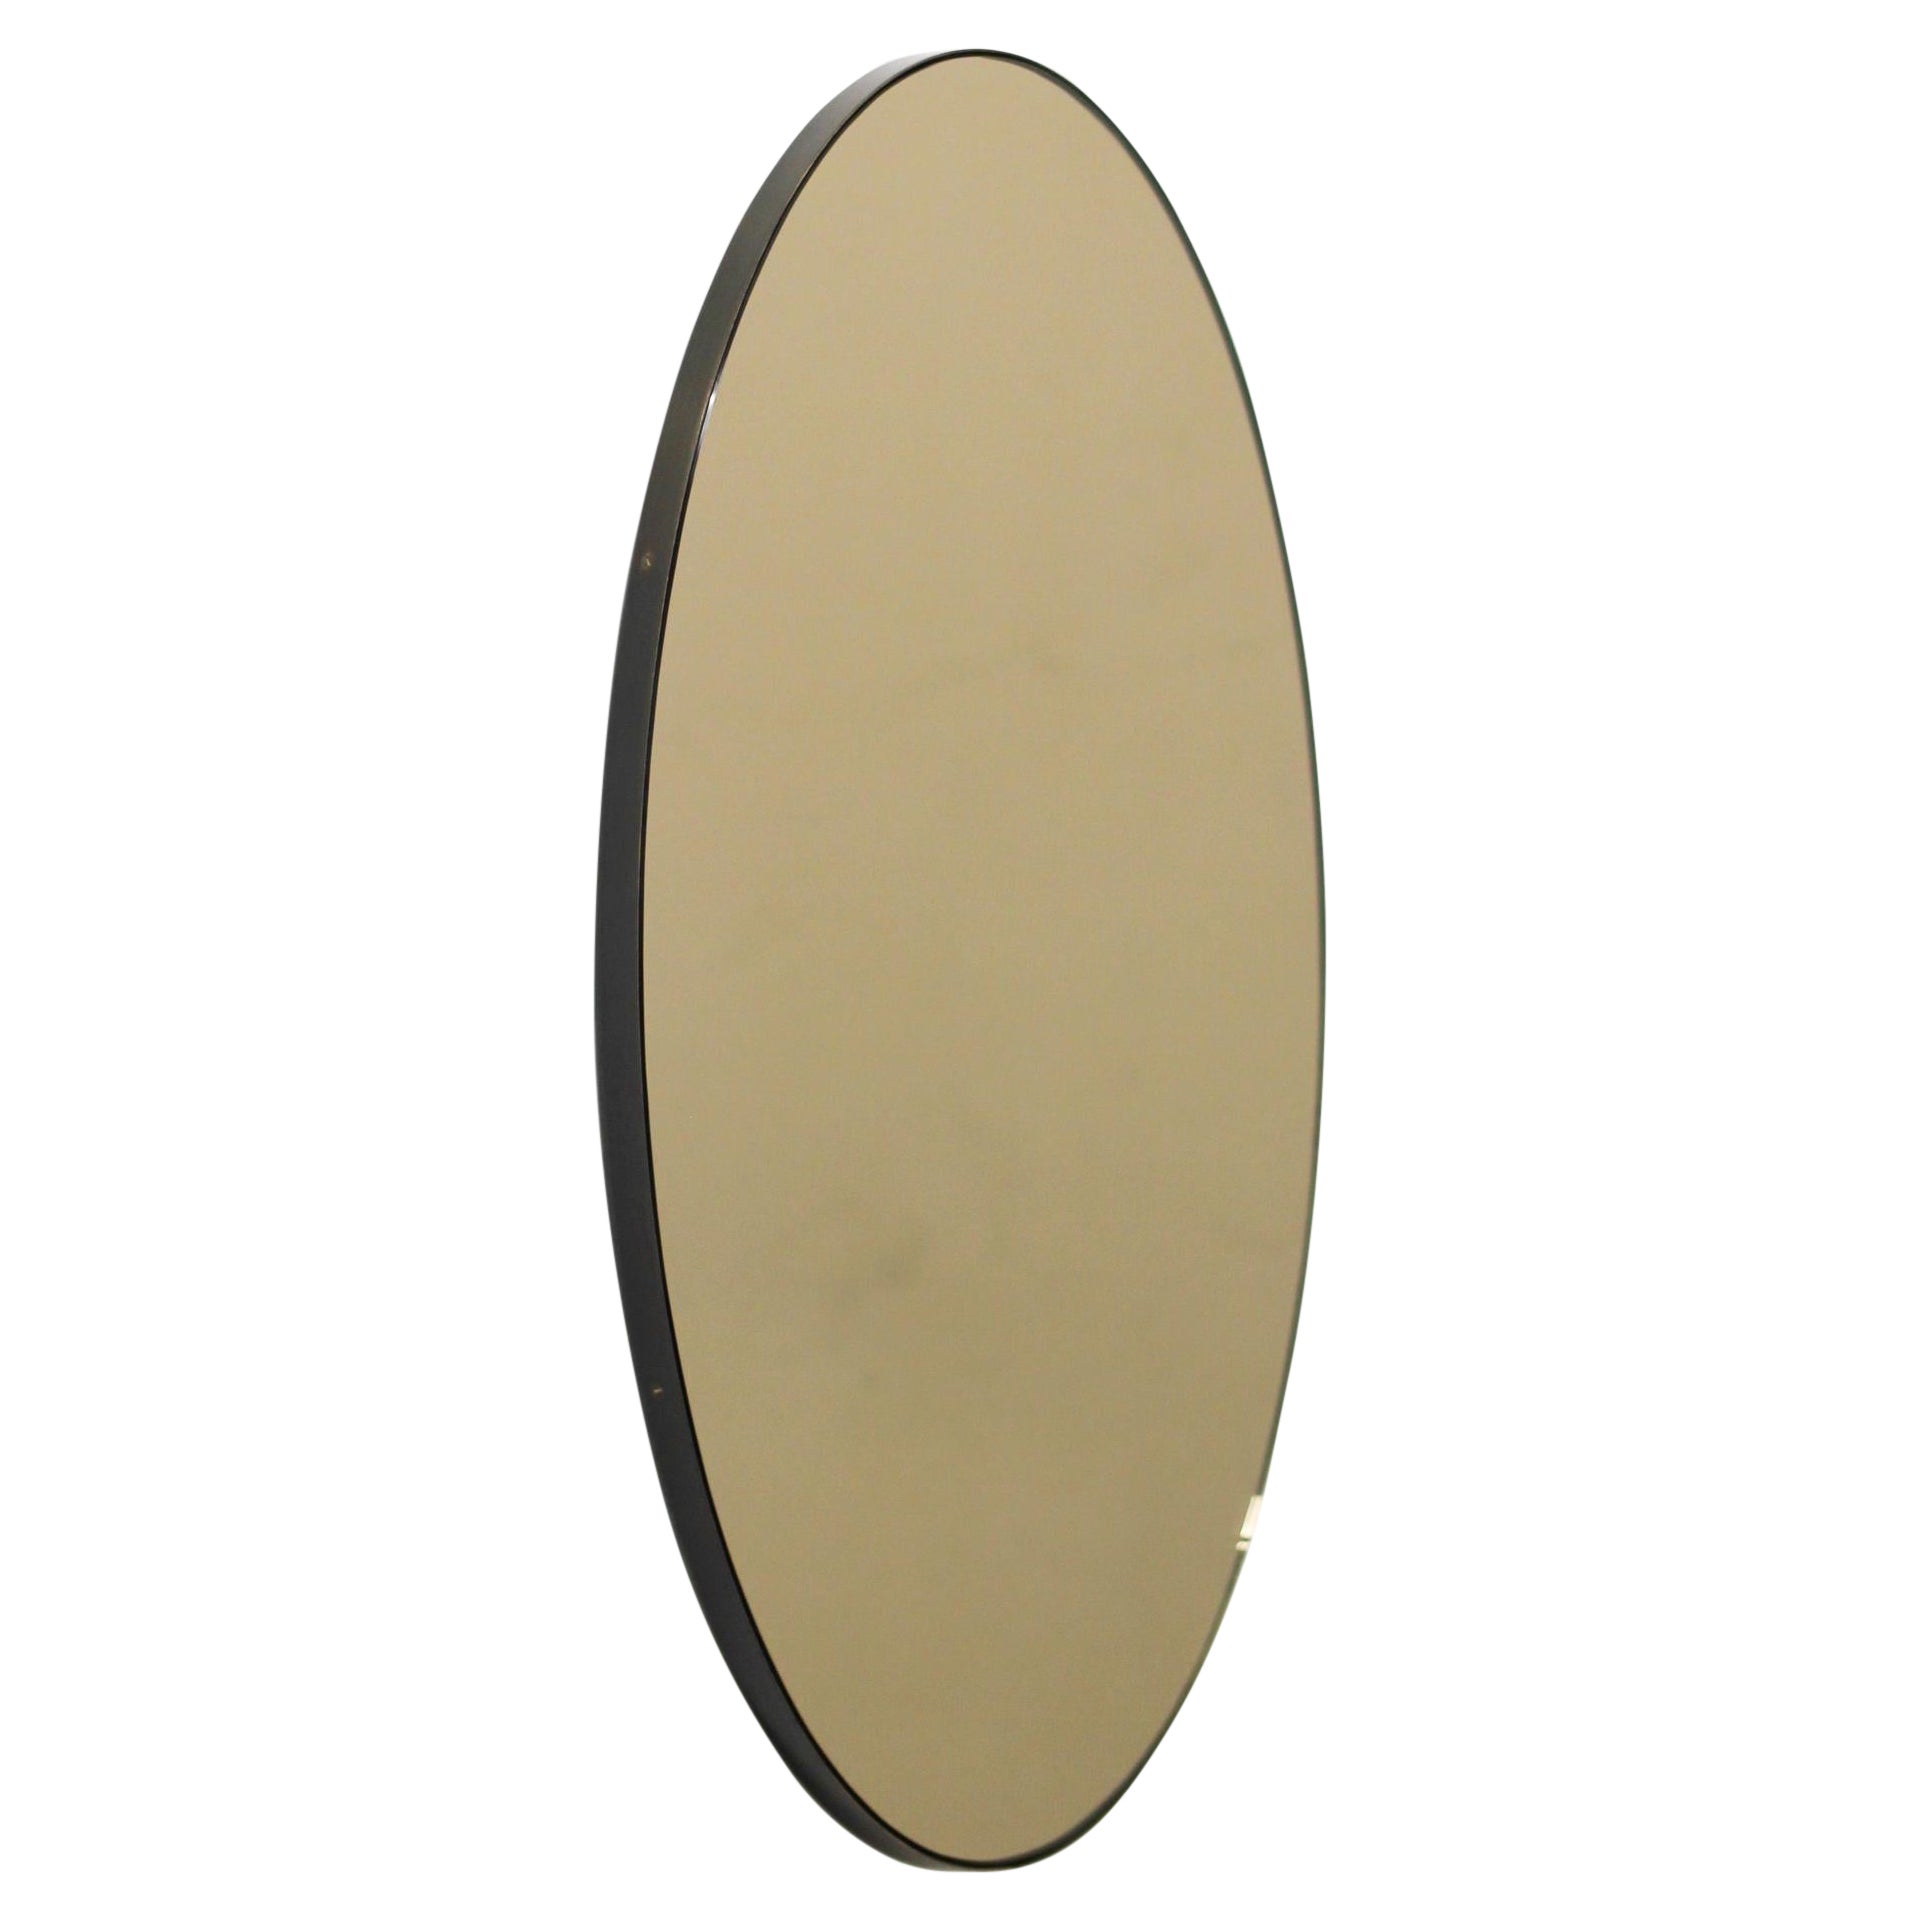 Ovalis Oval Bronze getönter zeitgenössischer Spiegel mit Patina-Rahmen, mittelgroß